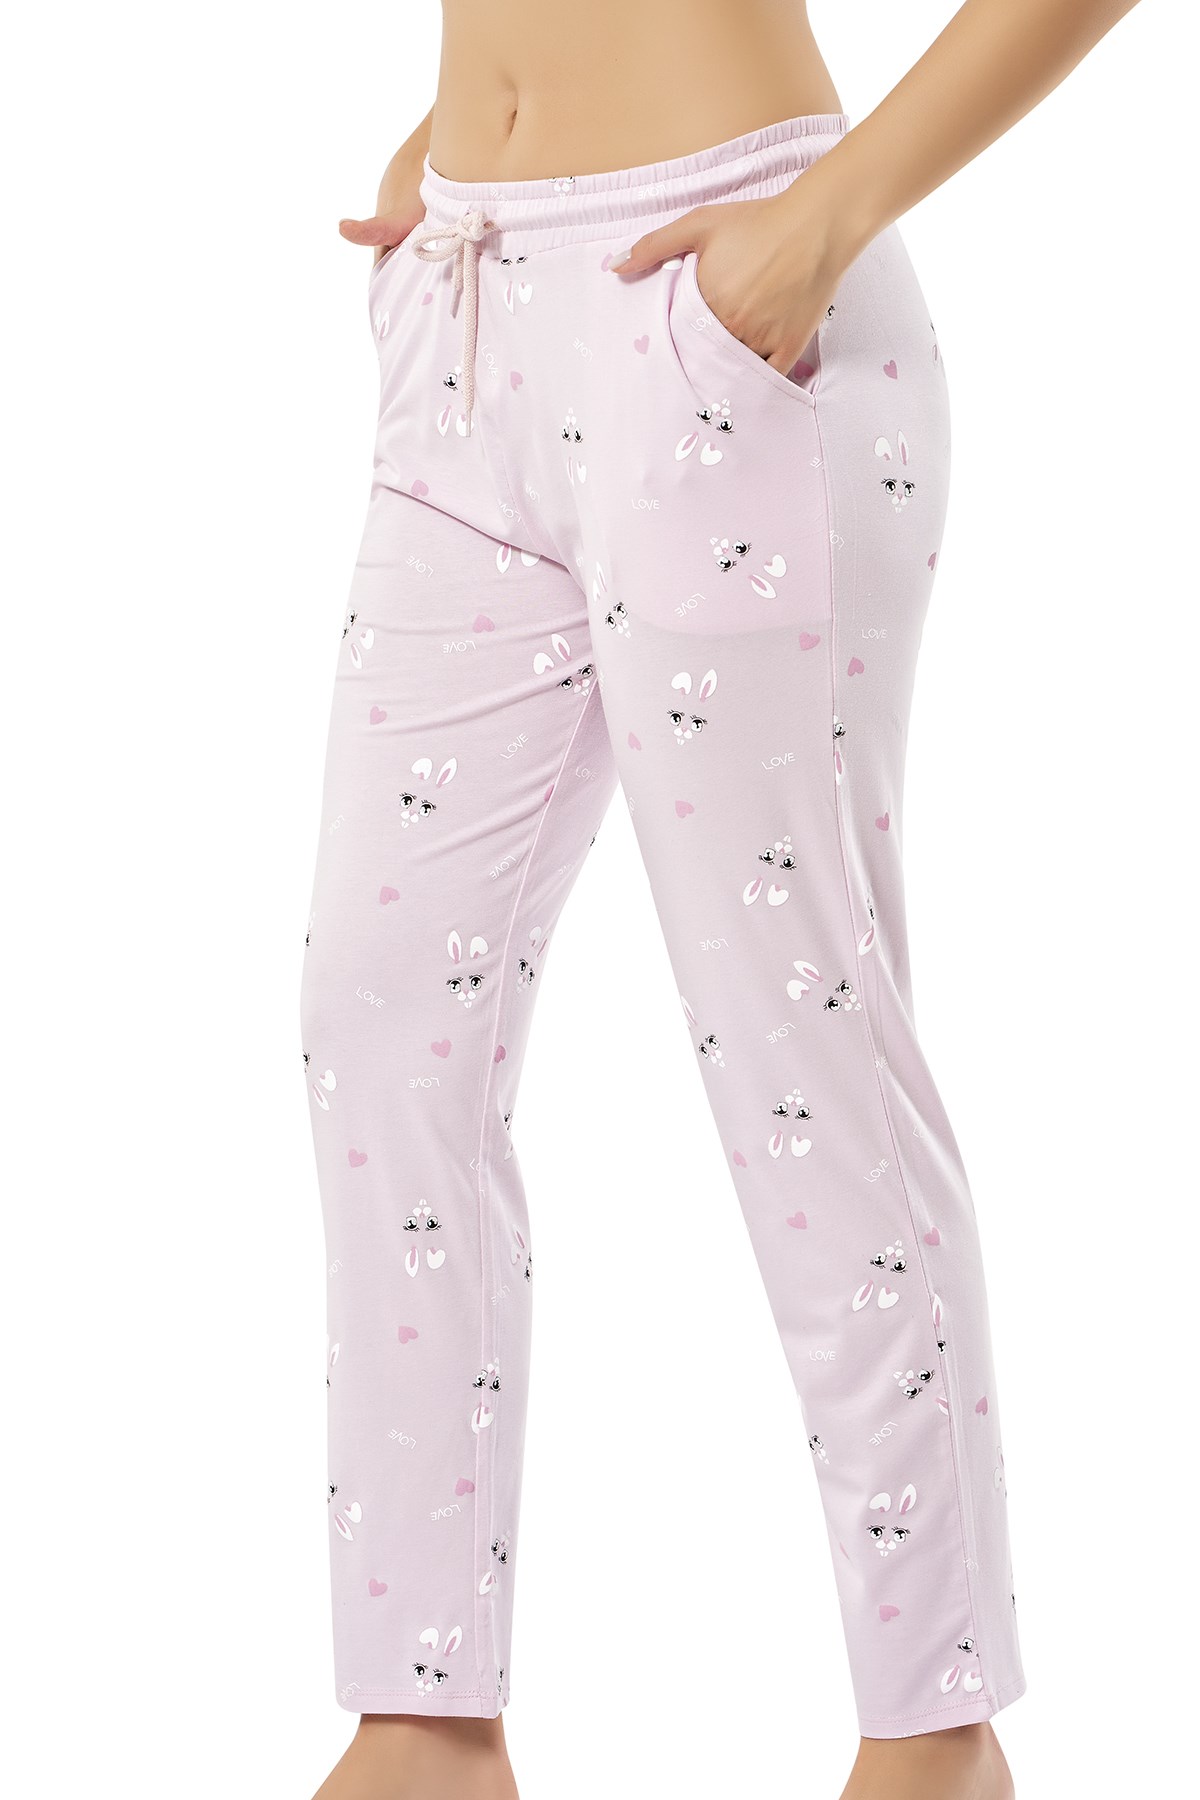 Erdem Bayan Tek Alt Pijama: Erdem İç Giyim